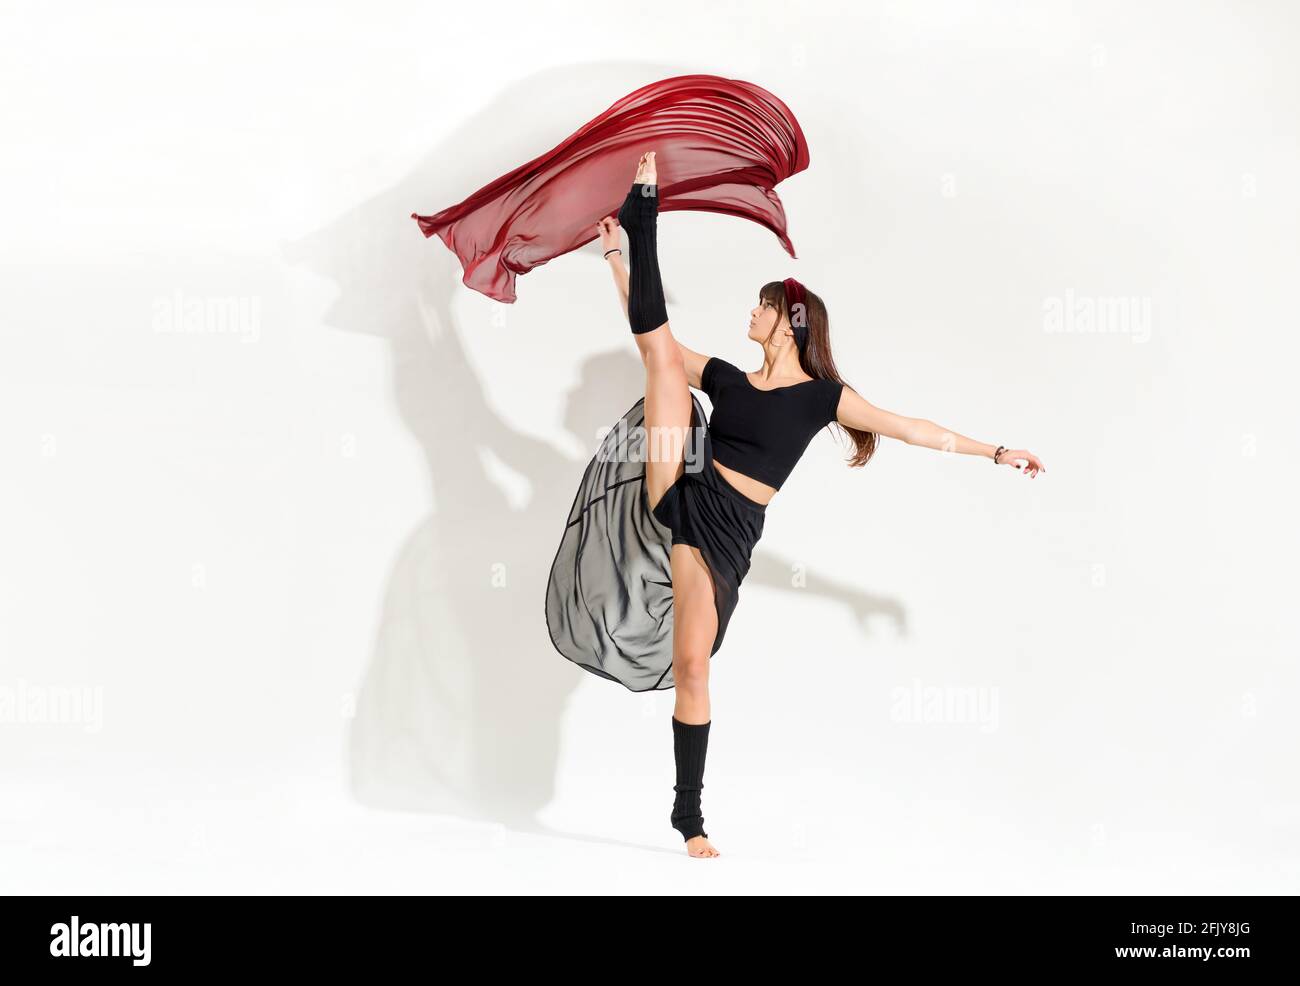 Giovane ballerina agile che esegue una posizione dinamica di pattinaggio su ghiaccio alzando la gamba in aria come lei galleggia con grazia tessuto rosso sopra la sua testa isola Foto Stock